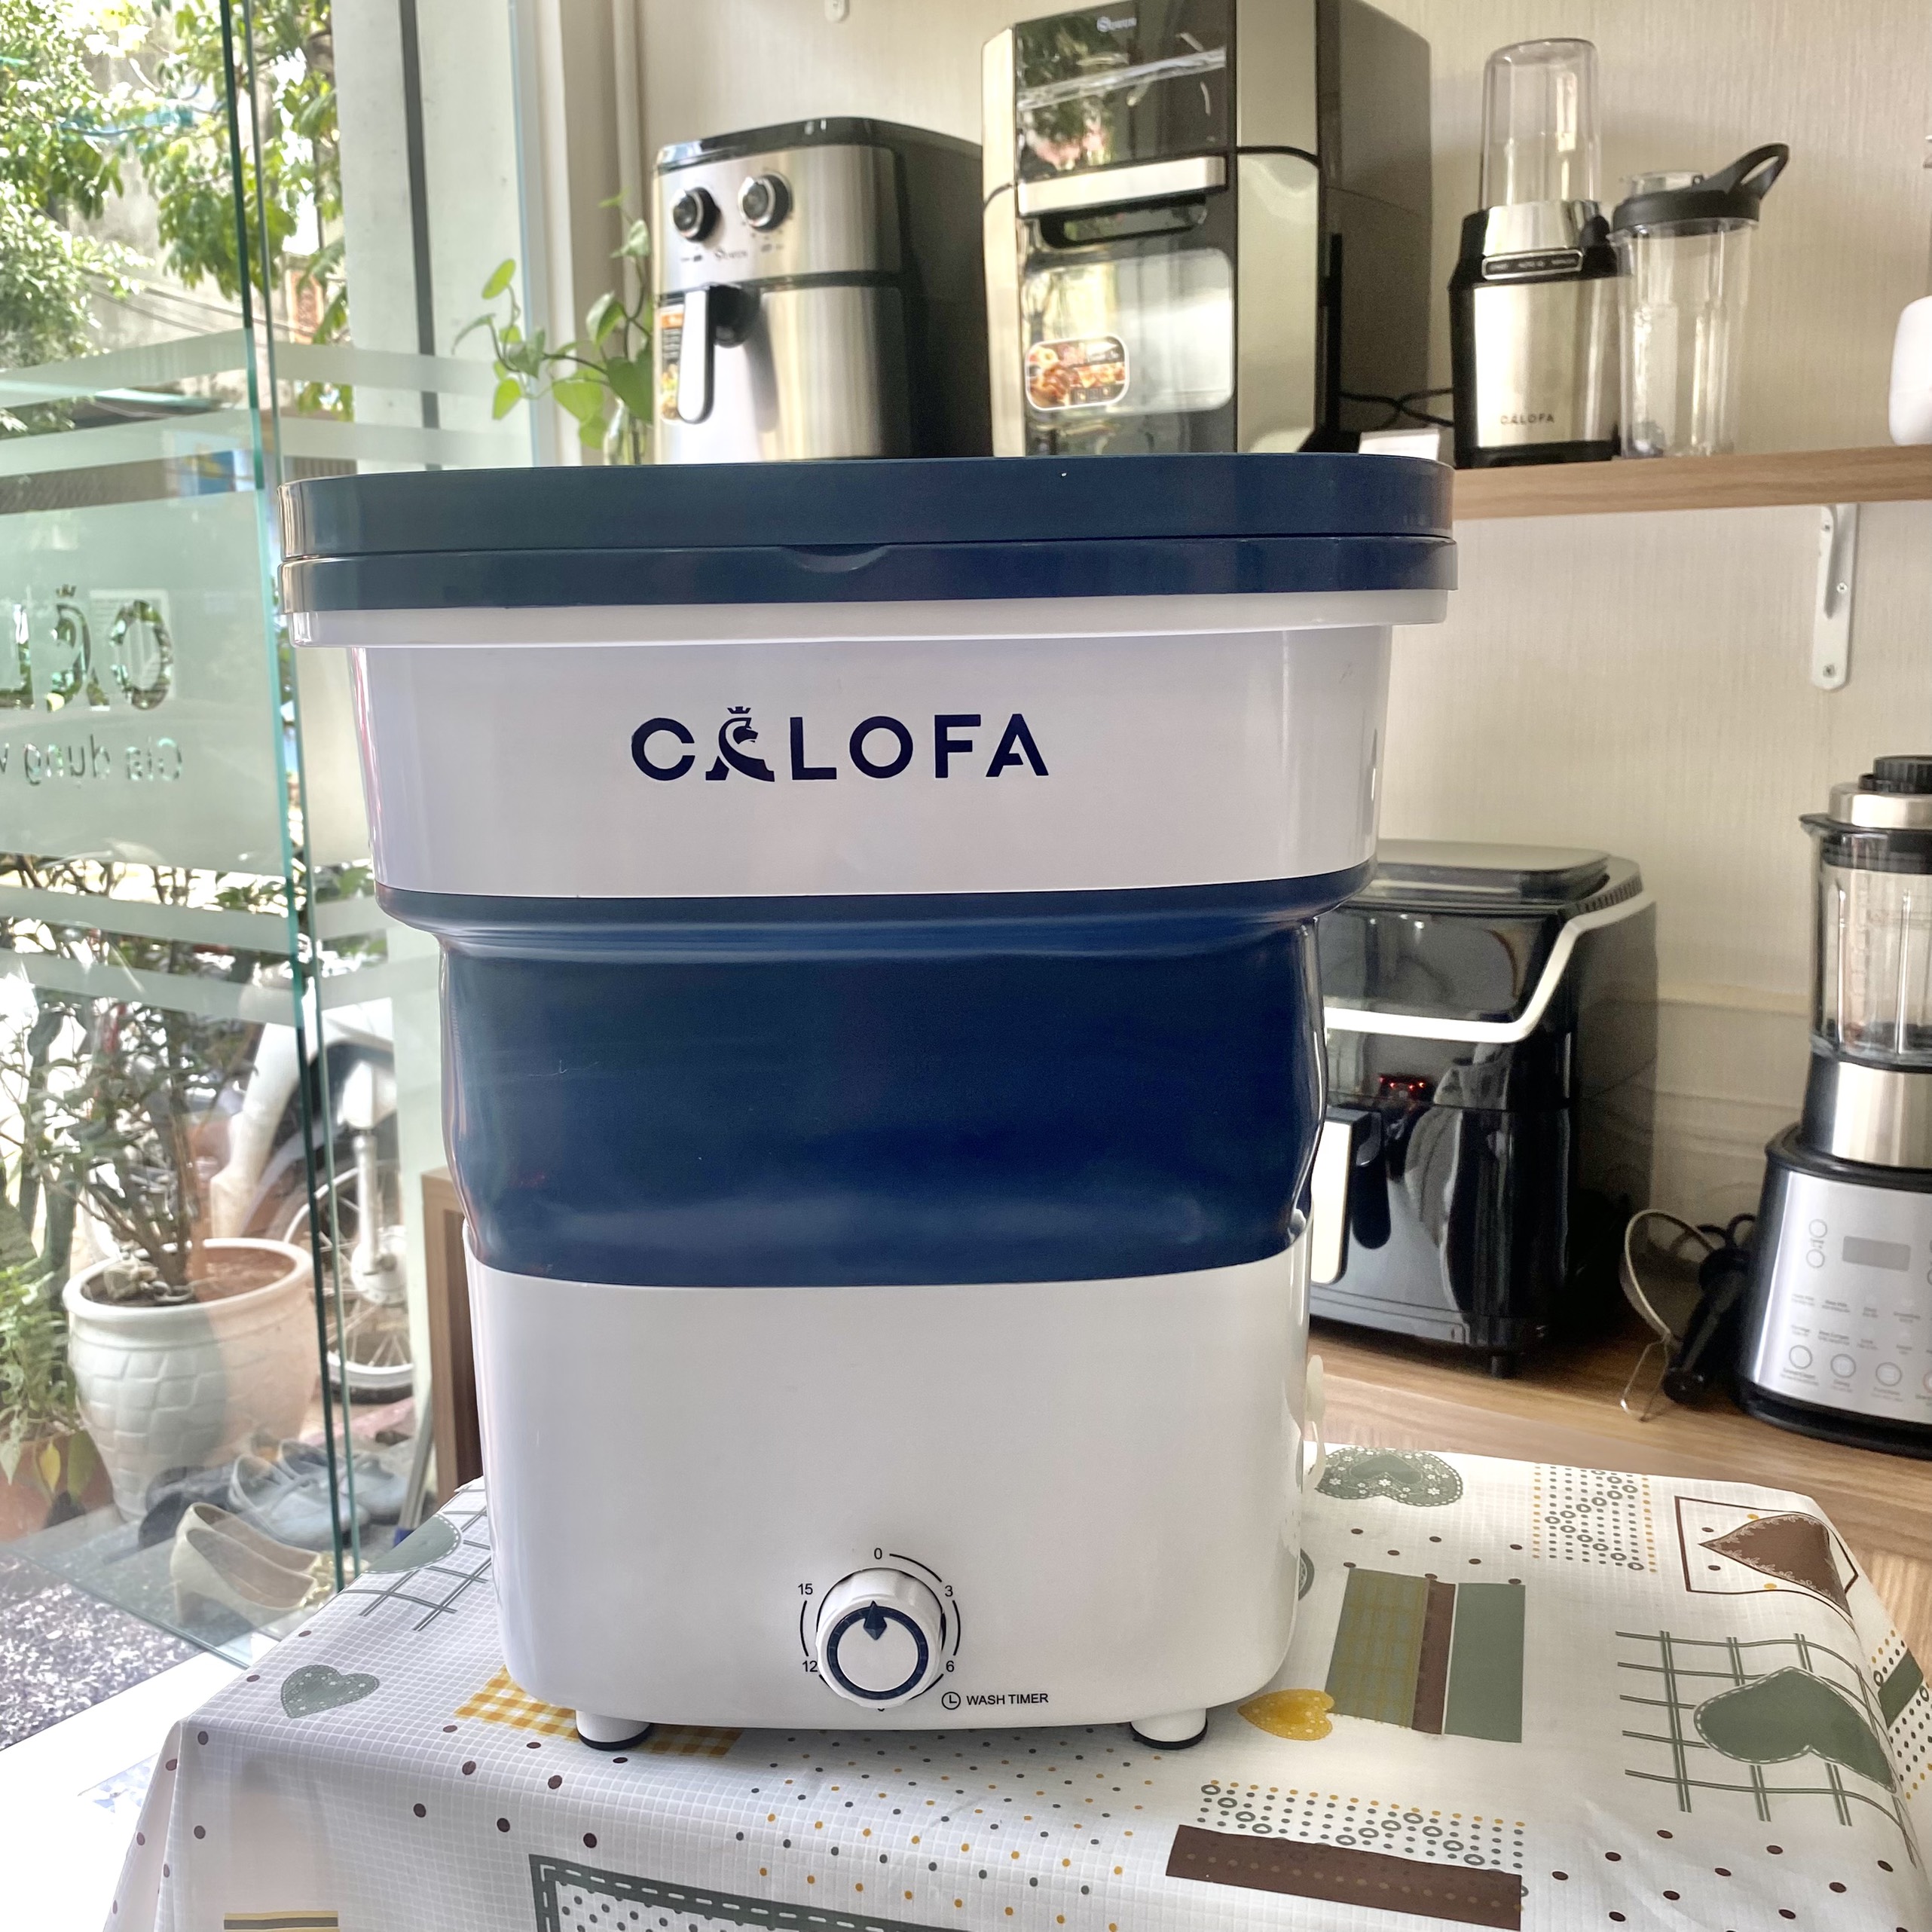 Máy giặt mini Calofa CA 500 khối lượng giặt 3kg công suất 260W êm ái không rung lắc, hàng chính hãng